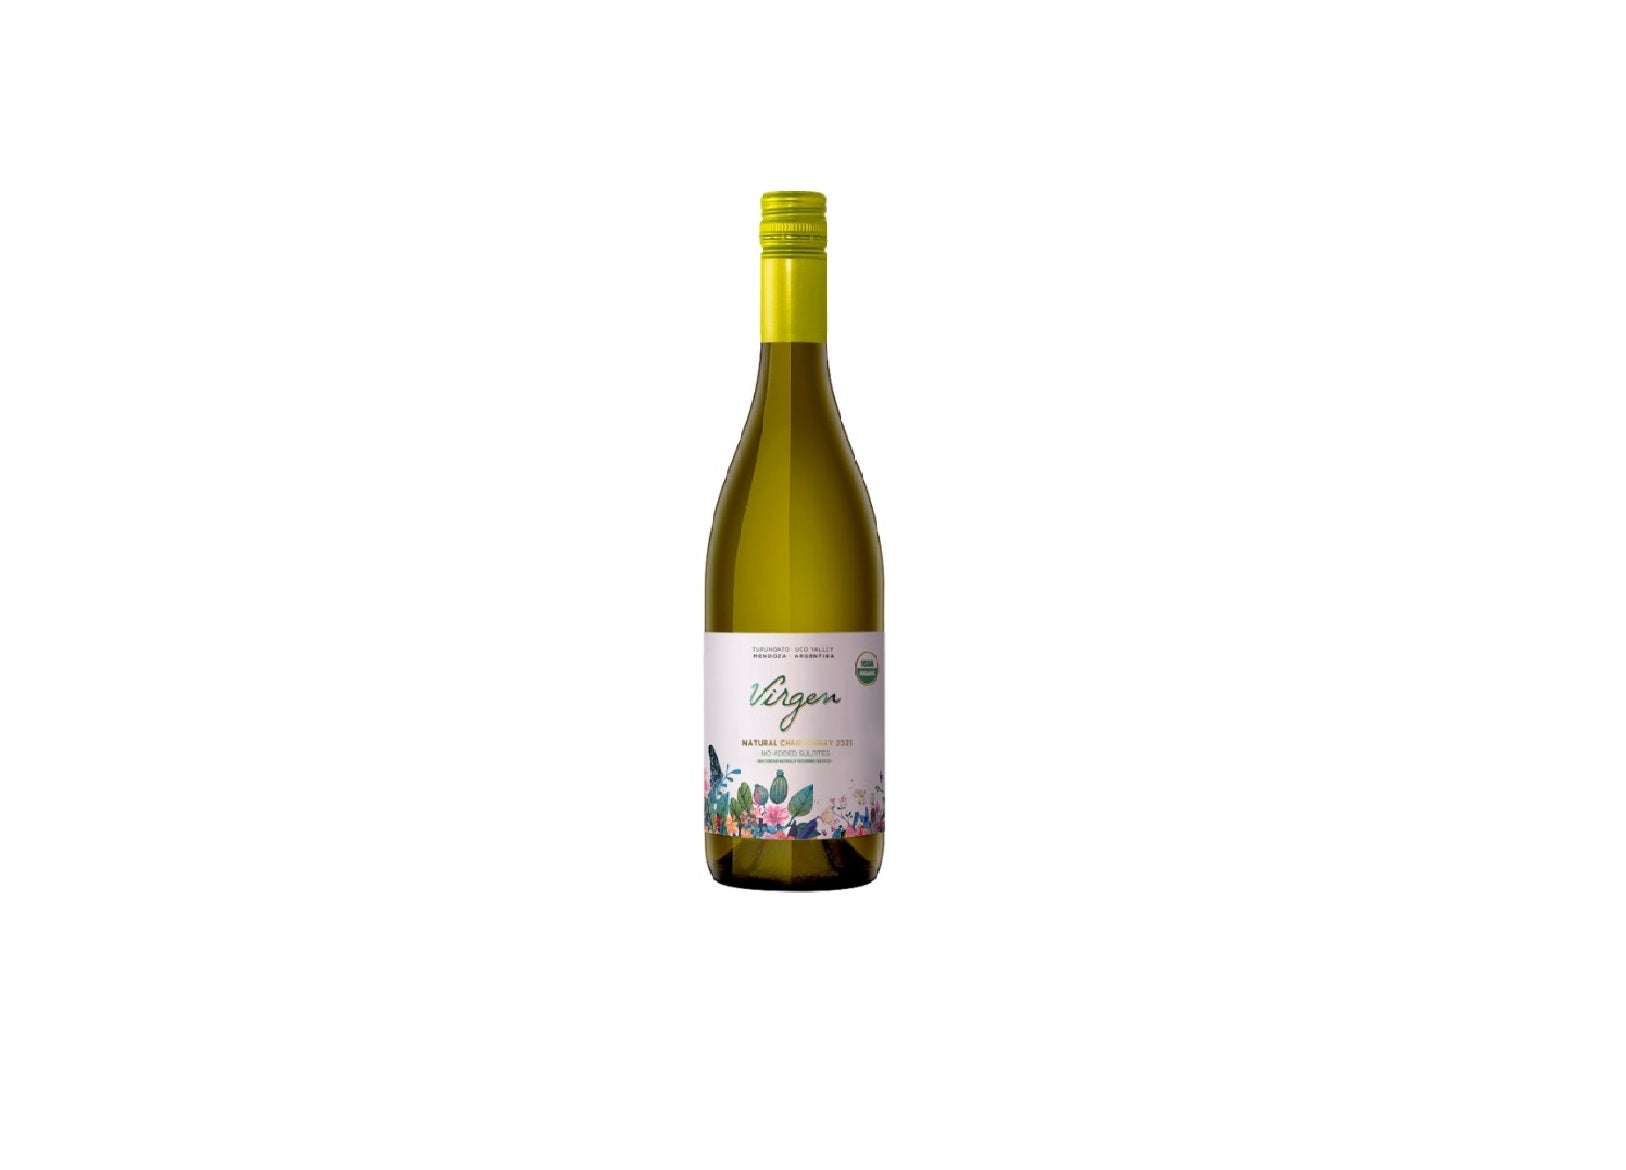 Domaine Bousquet's Virgen Organic Chardonnay 2021 - Product Launch